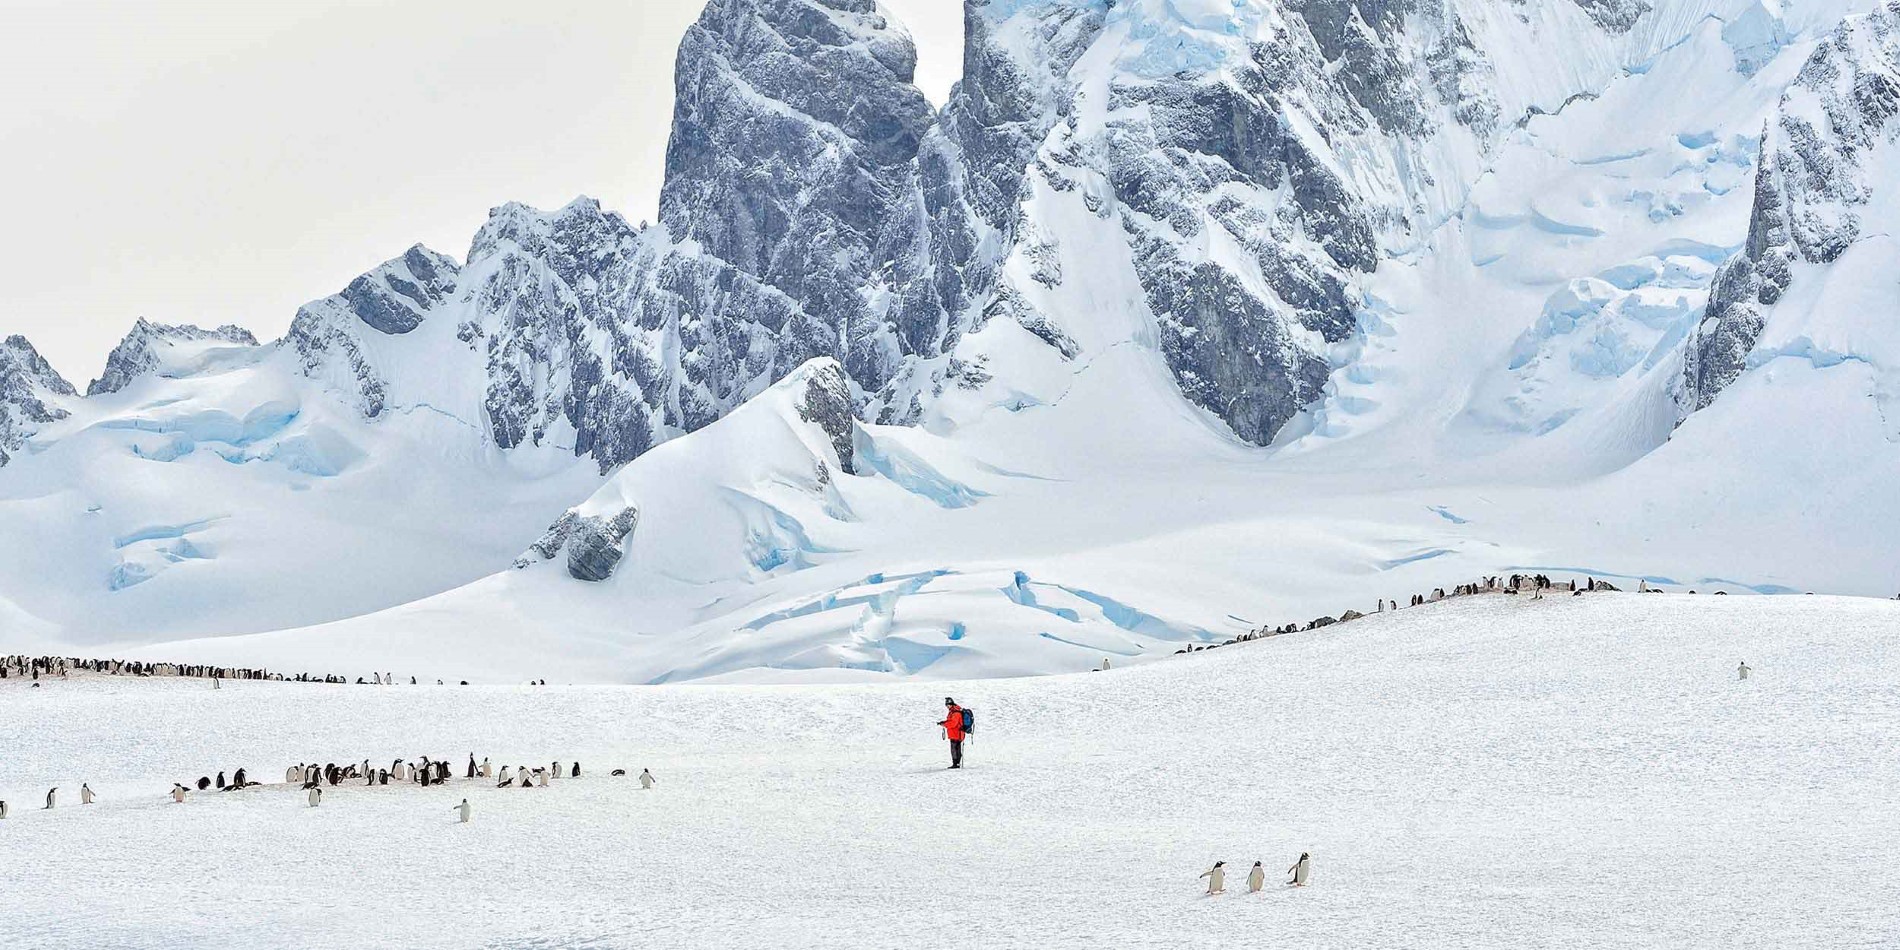 Mann i midten av pingvinkoloni i stort Antarktis landskap